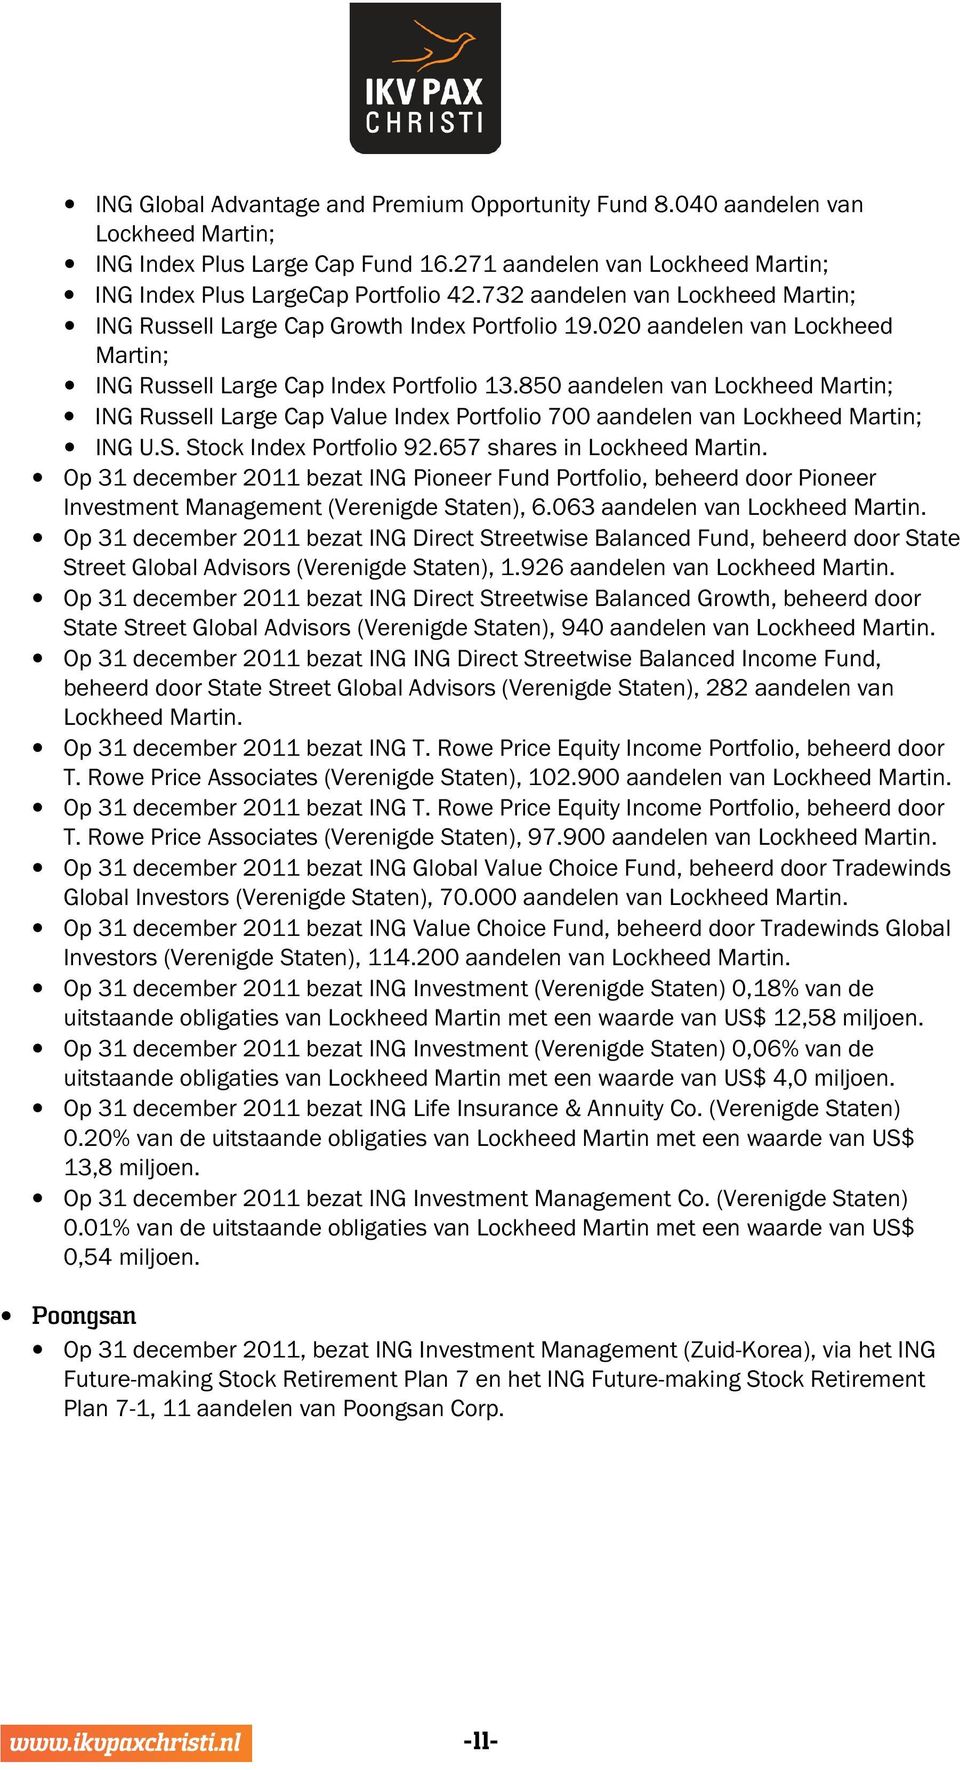 850 aandelen van Lockheed Martin; ING Russell Large Cap Value Index Portfolio 700 aandelen van Lockheed Martin; ING U.S. Stock Index Portfolio 92.657 shares in Lockheed Martin.